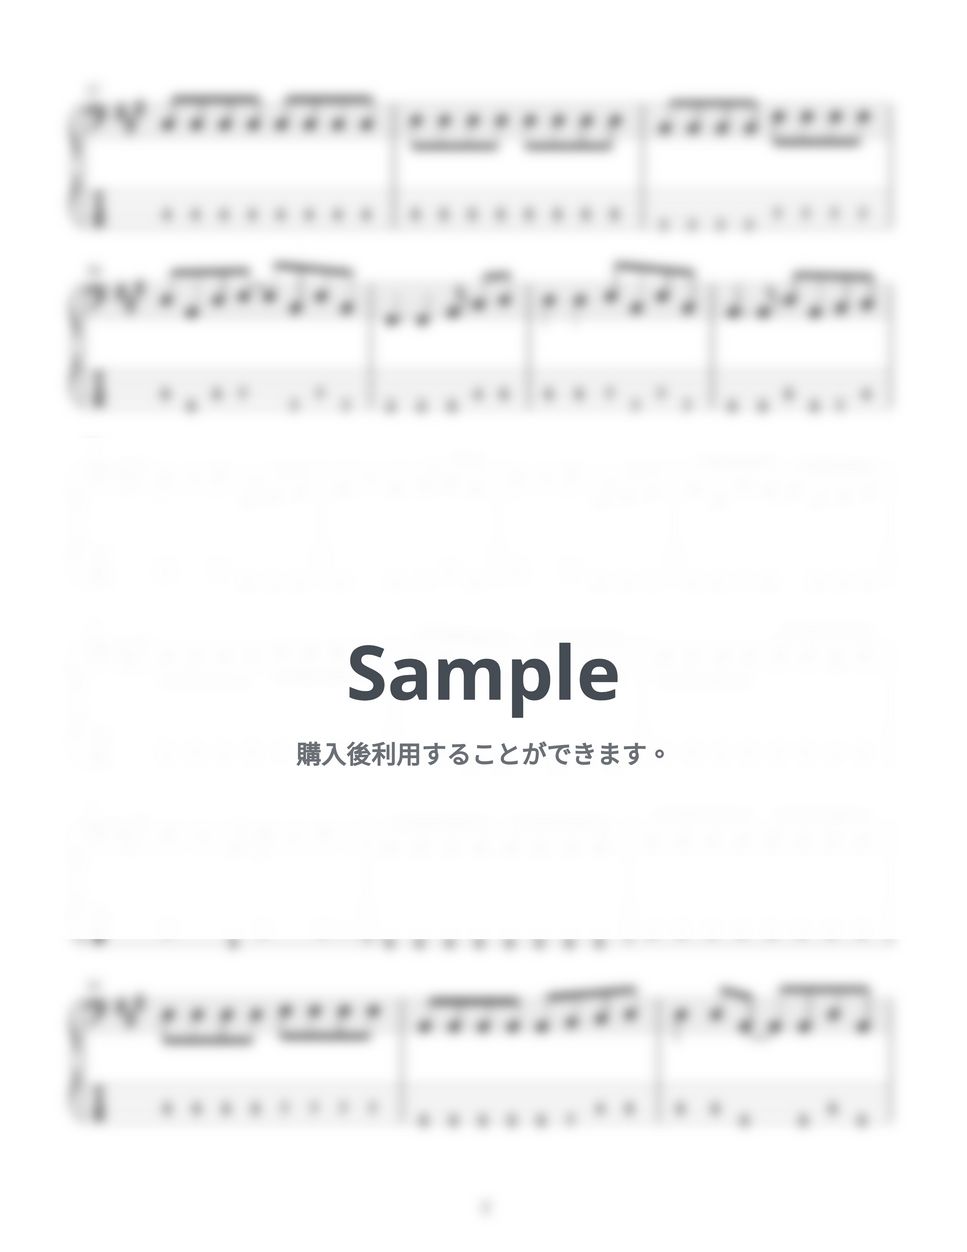 あいみょん - ハルノヒ (４弦ベースTAB譜、PDF７枚) by G's score